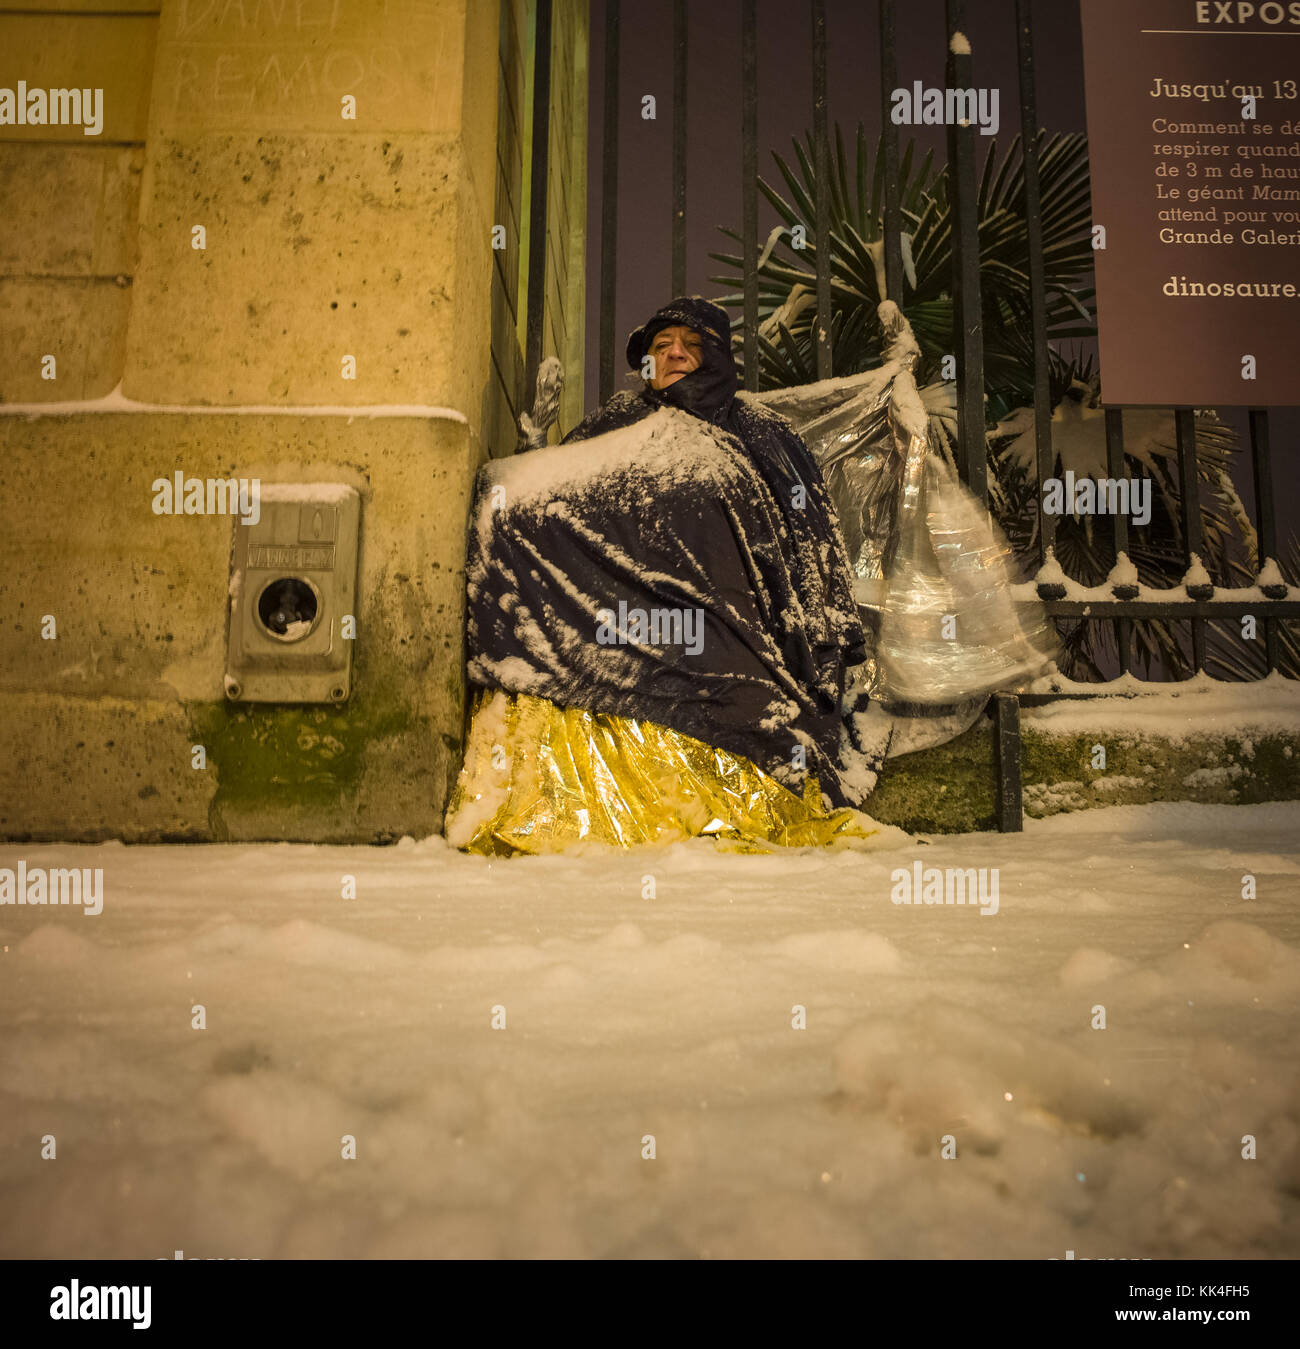 Portraits de sans-abri parisiens - 18/01/2013 - - isolation - sylvain leser / le pictorium Banque D'Images